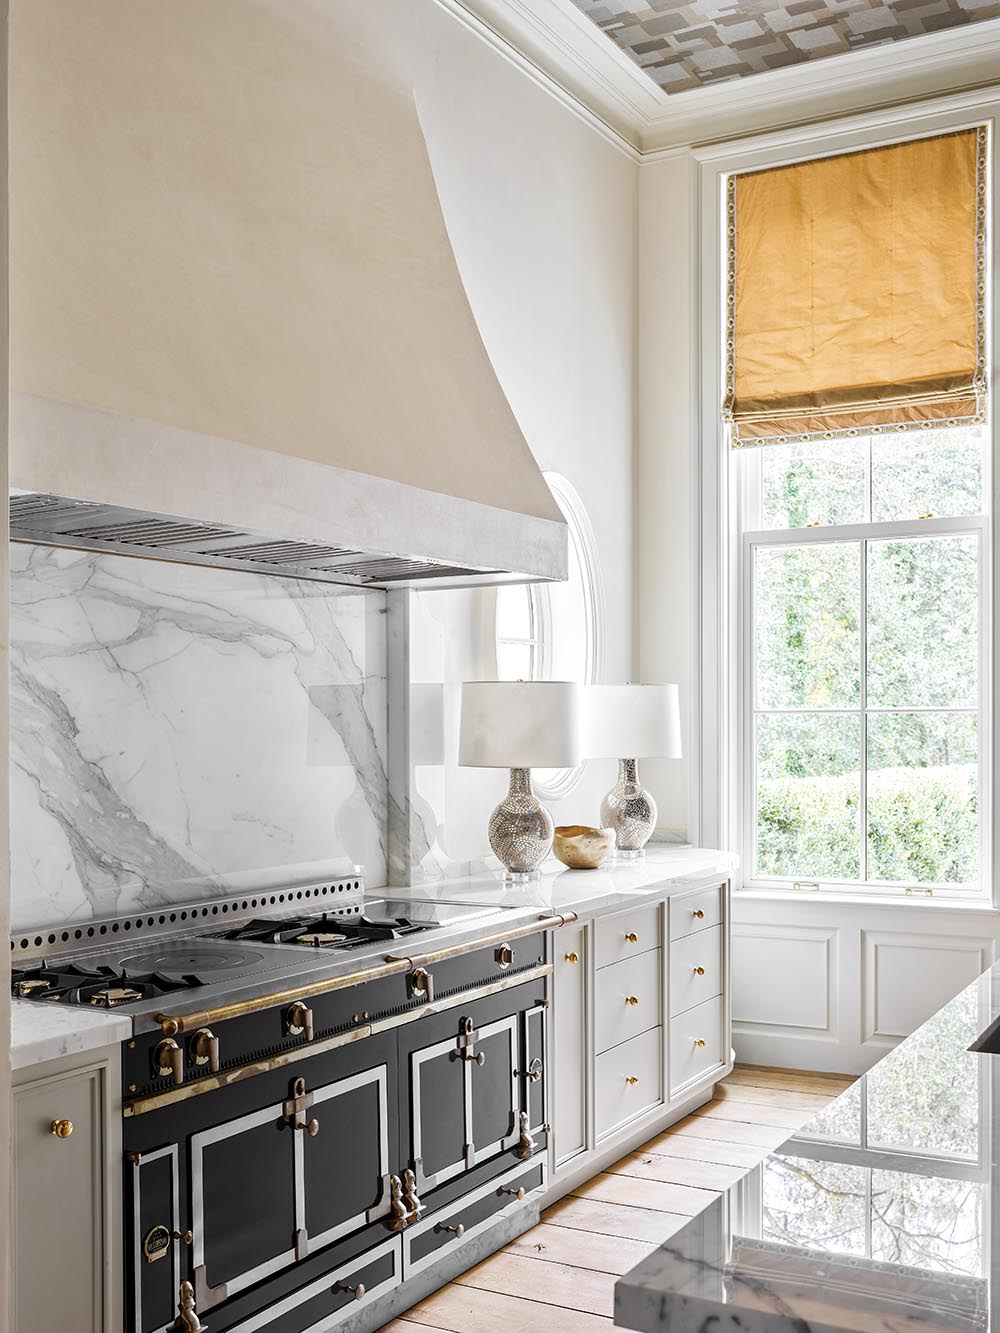 FLOWER magazine Atlanta showhouse kitchen with custom LaCornue stove and marble backsplash.